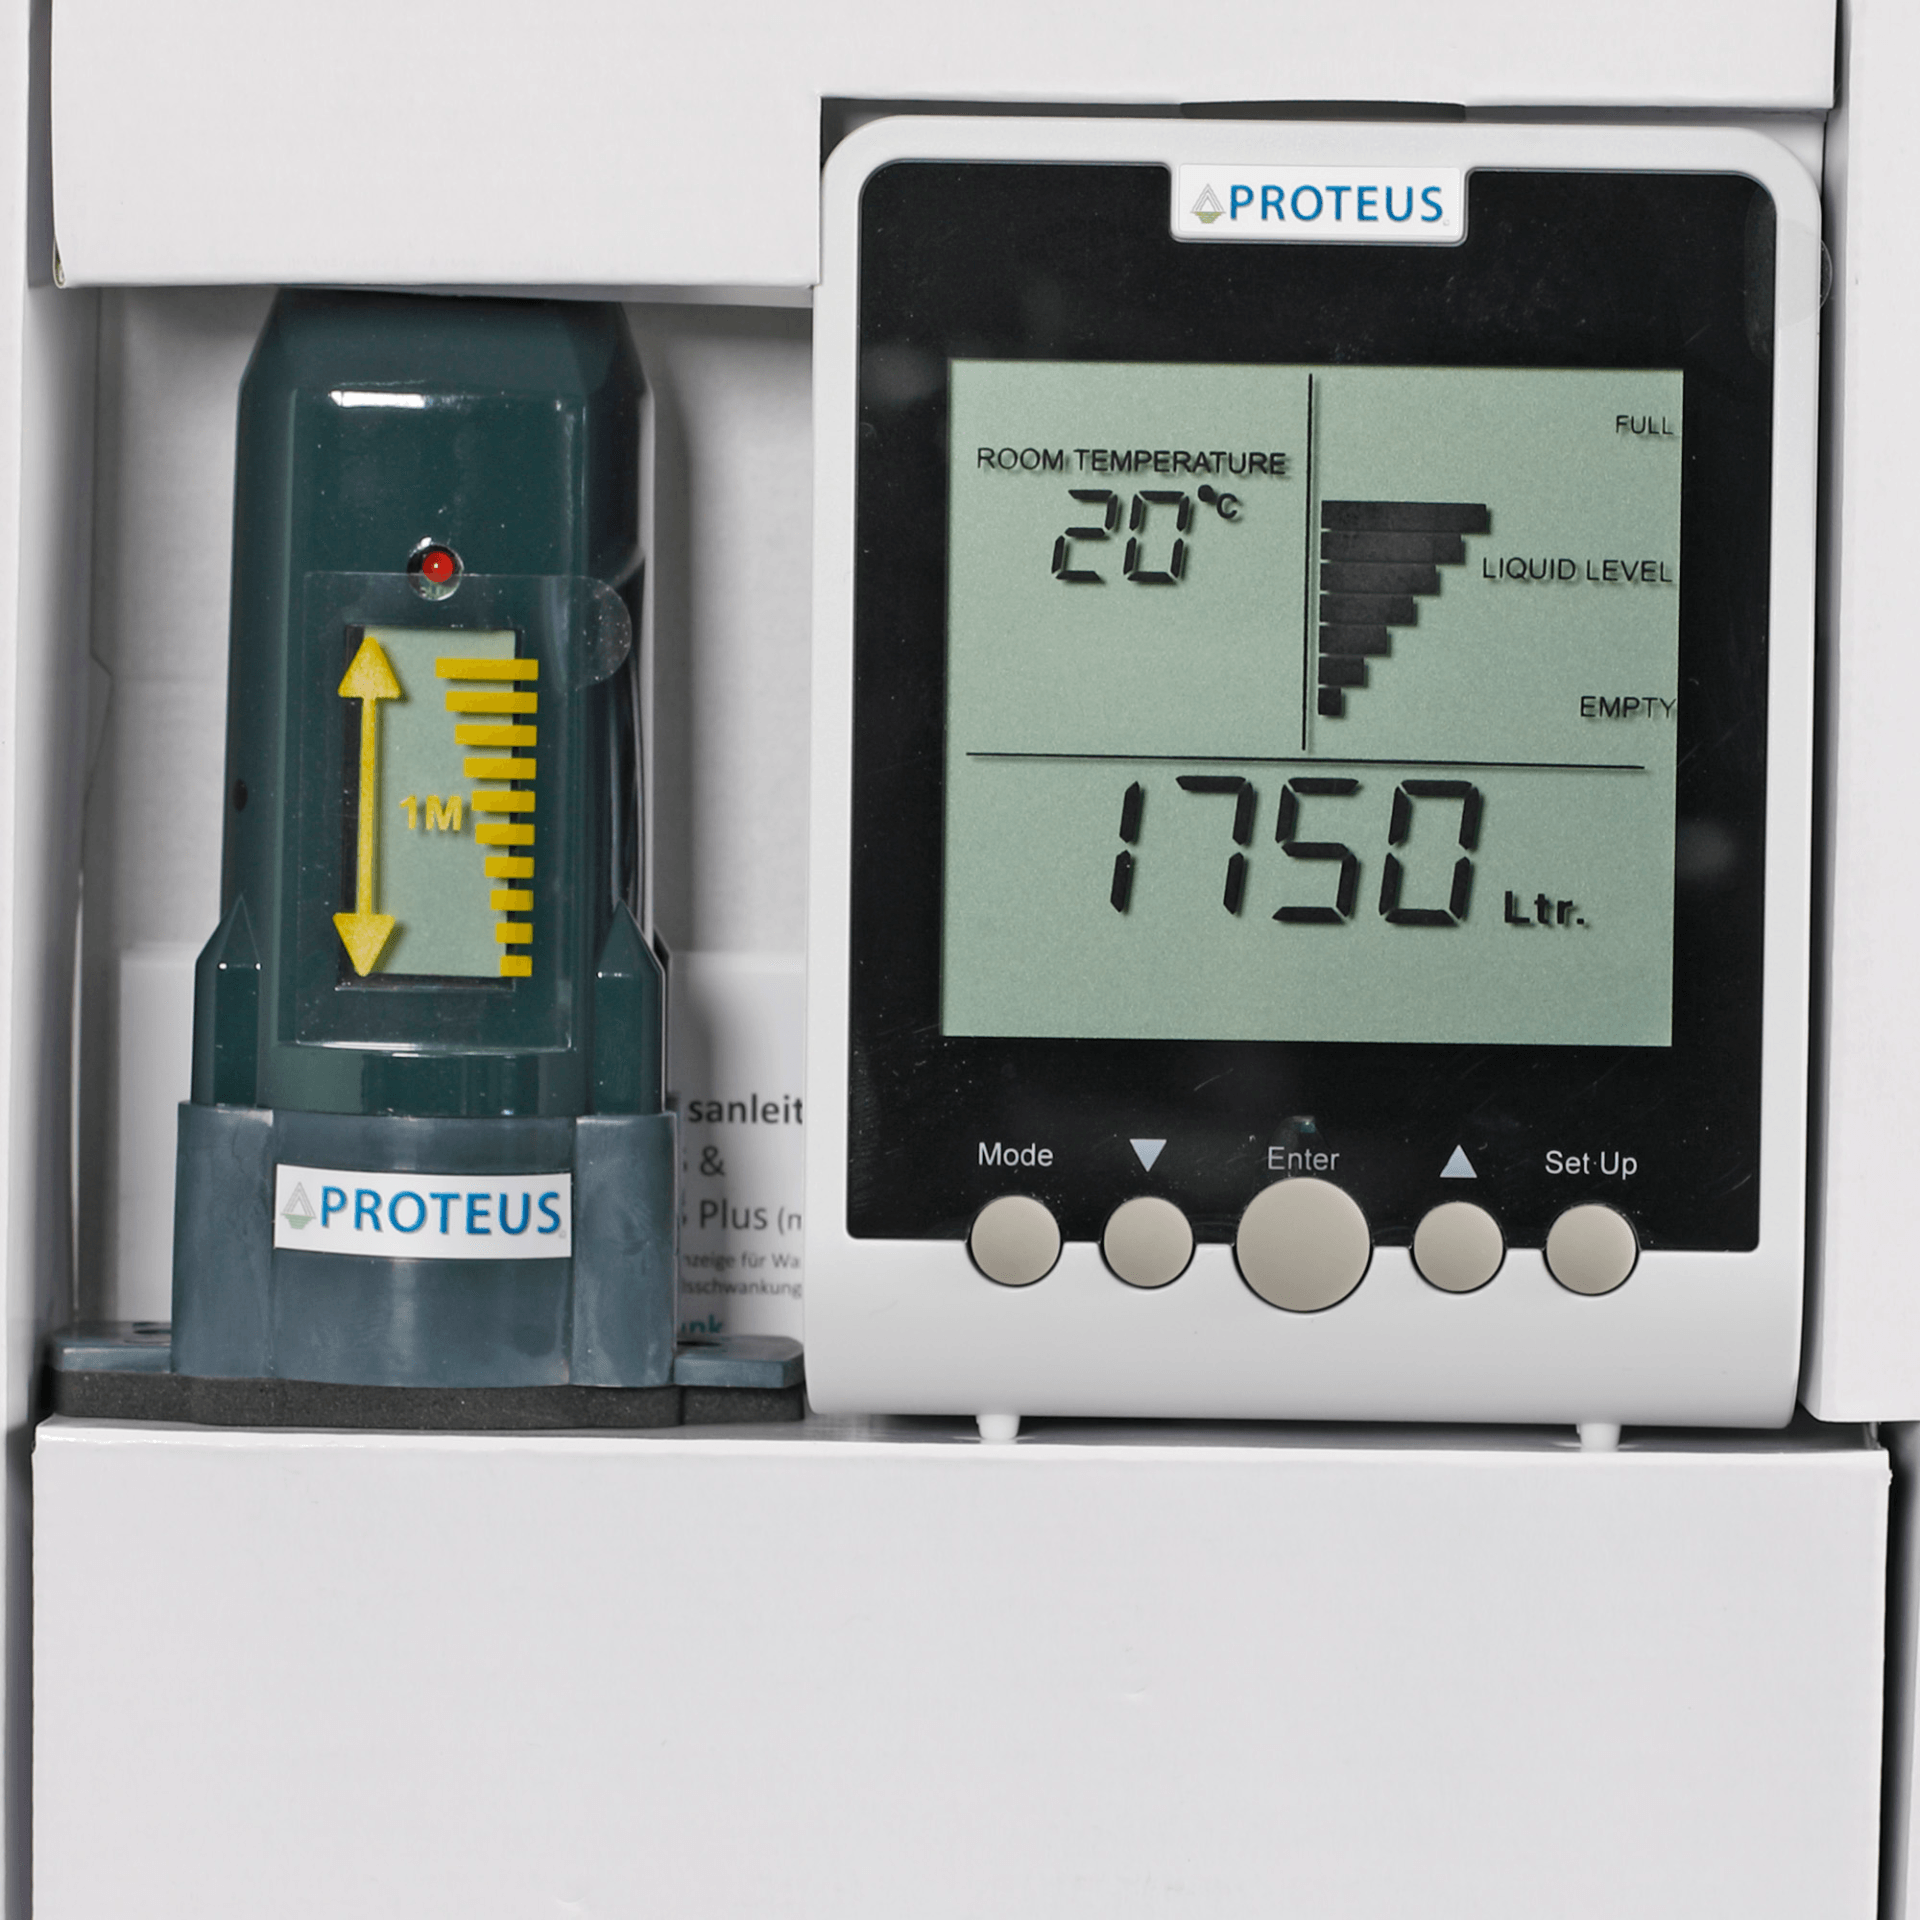 Proteus EcoMeter S - Füllstandsanzeige für Zisterne, Wassertanks, Erdtanks